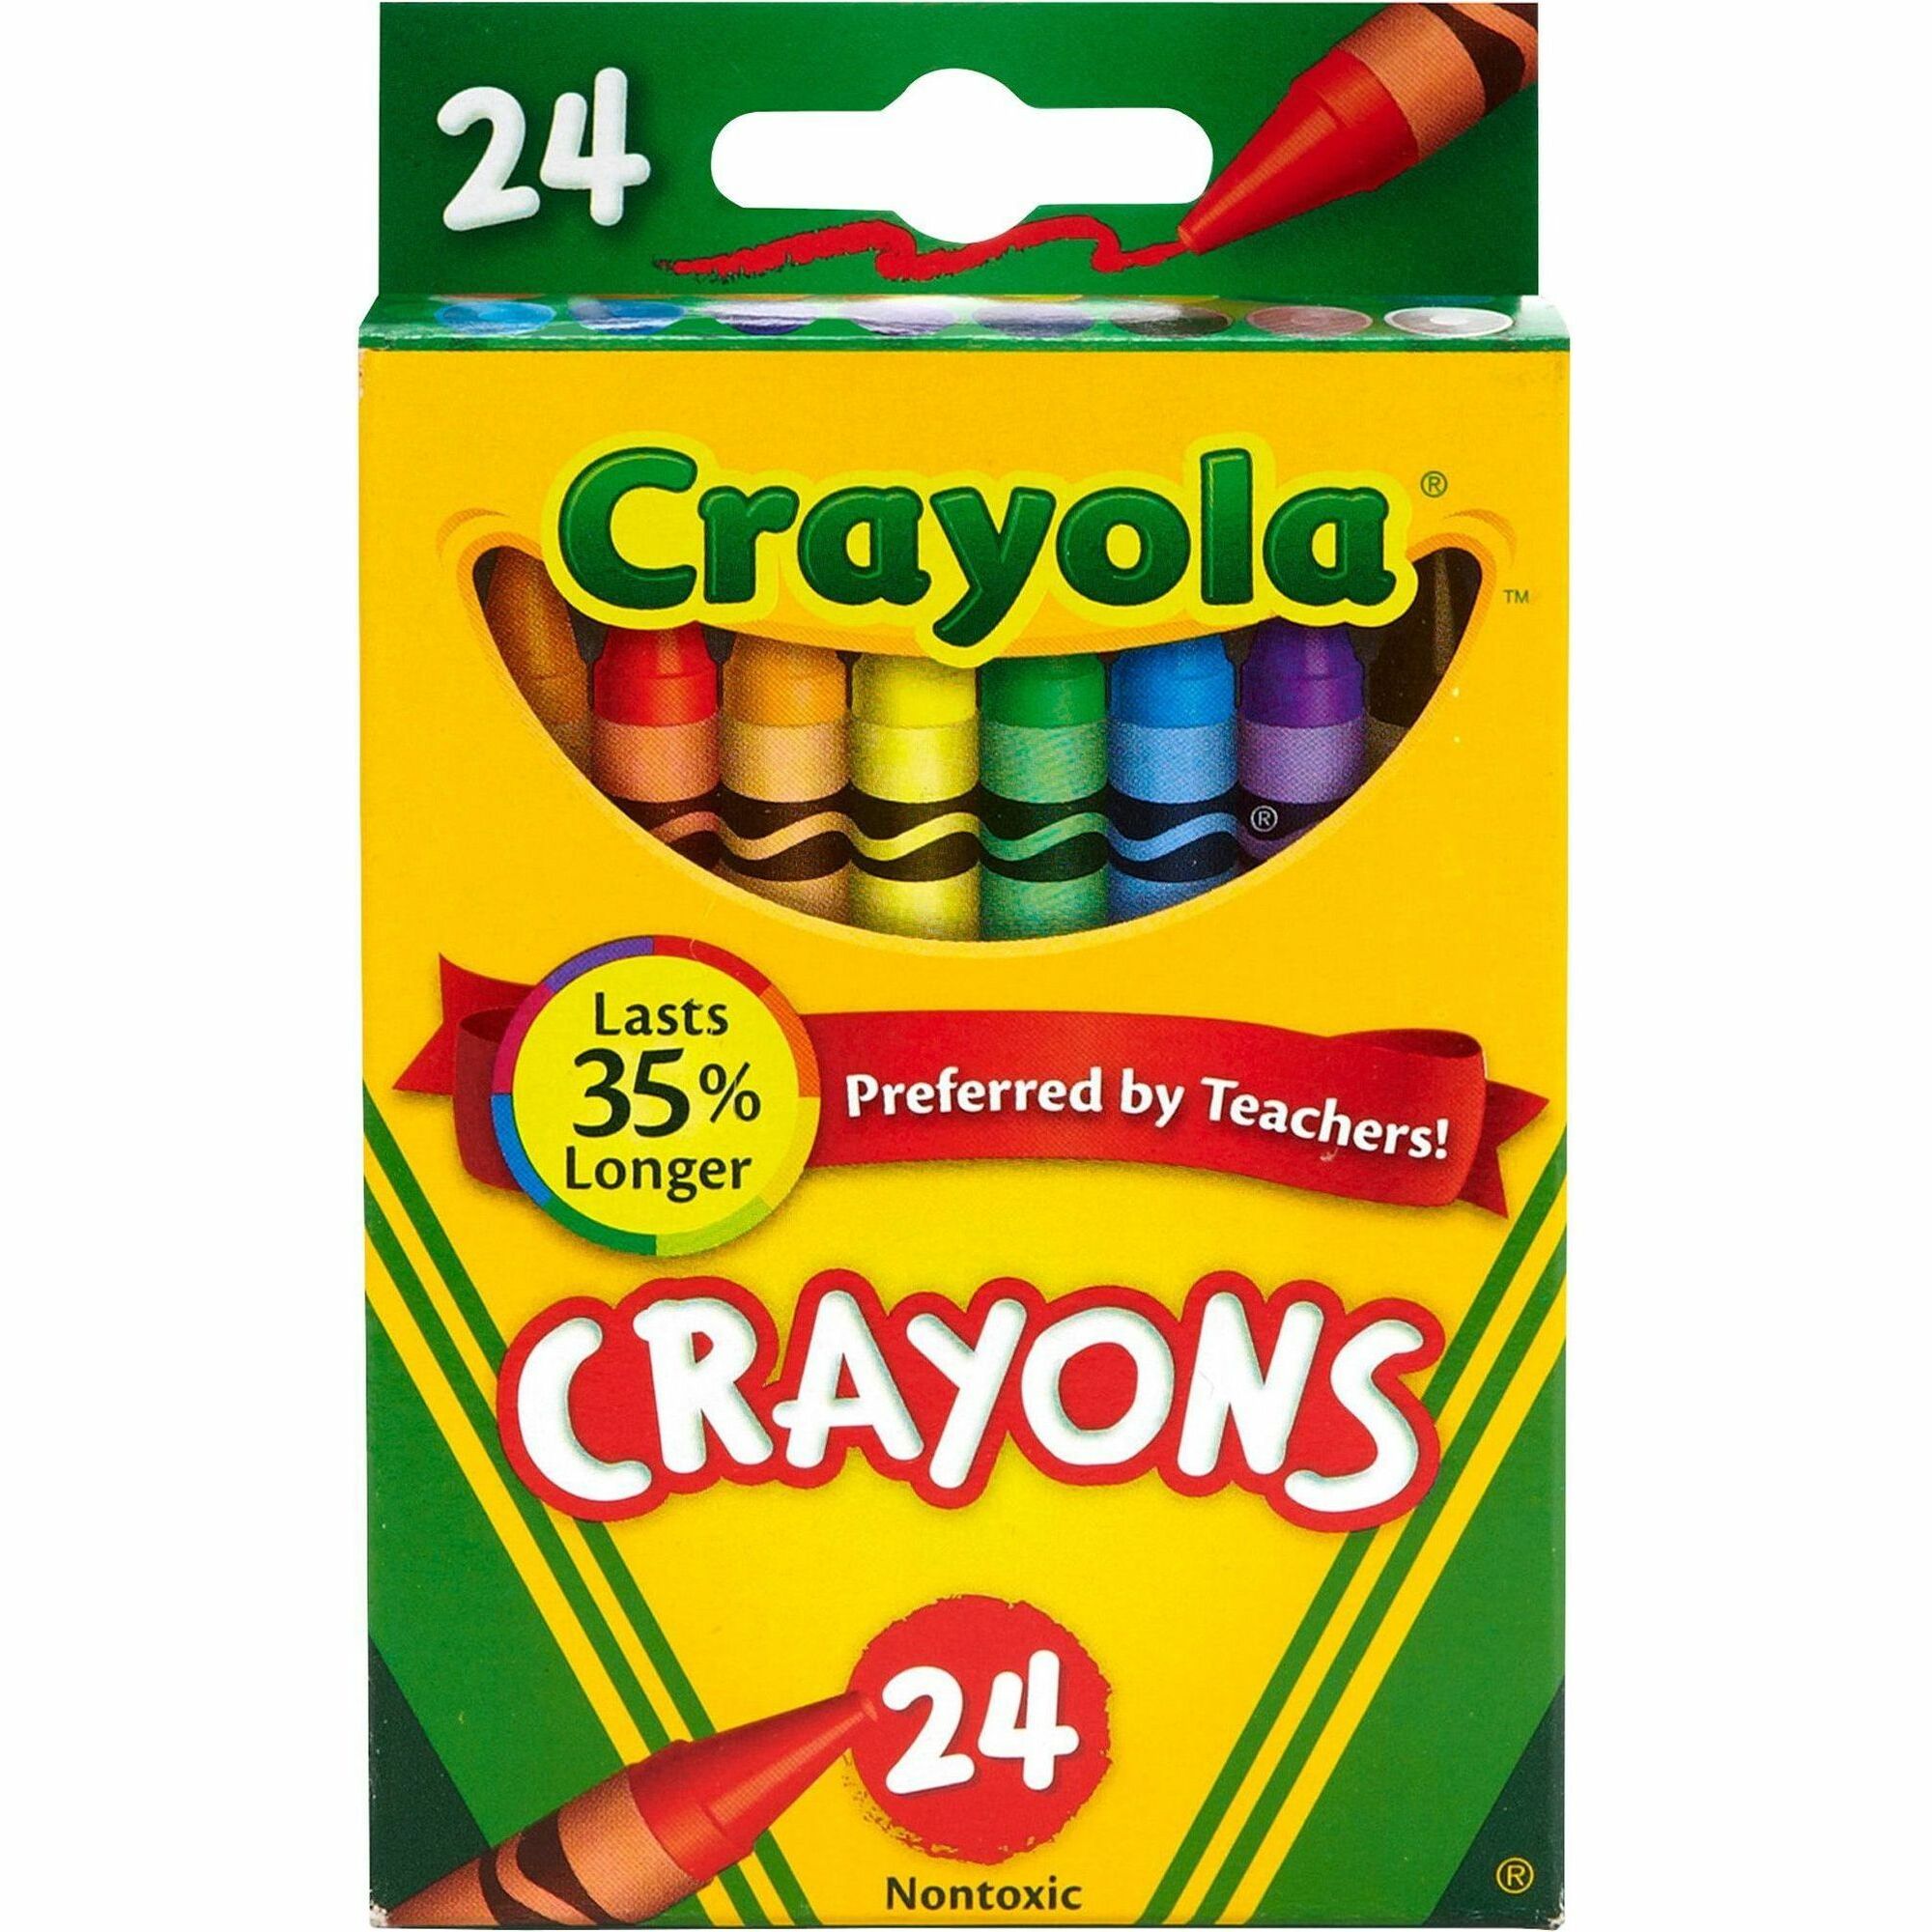 Prang Wax Crayons - Assorted - 8 / Box